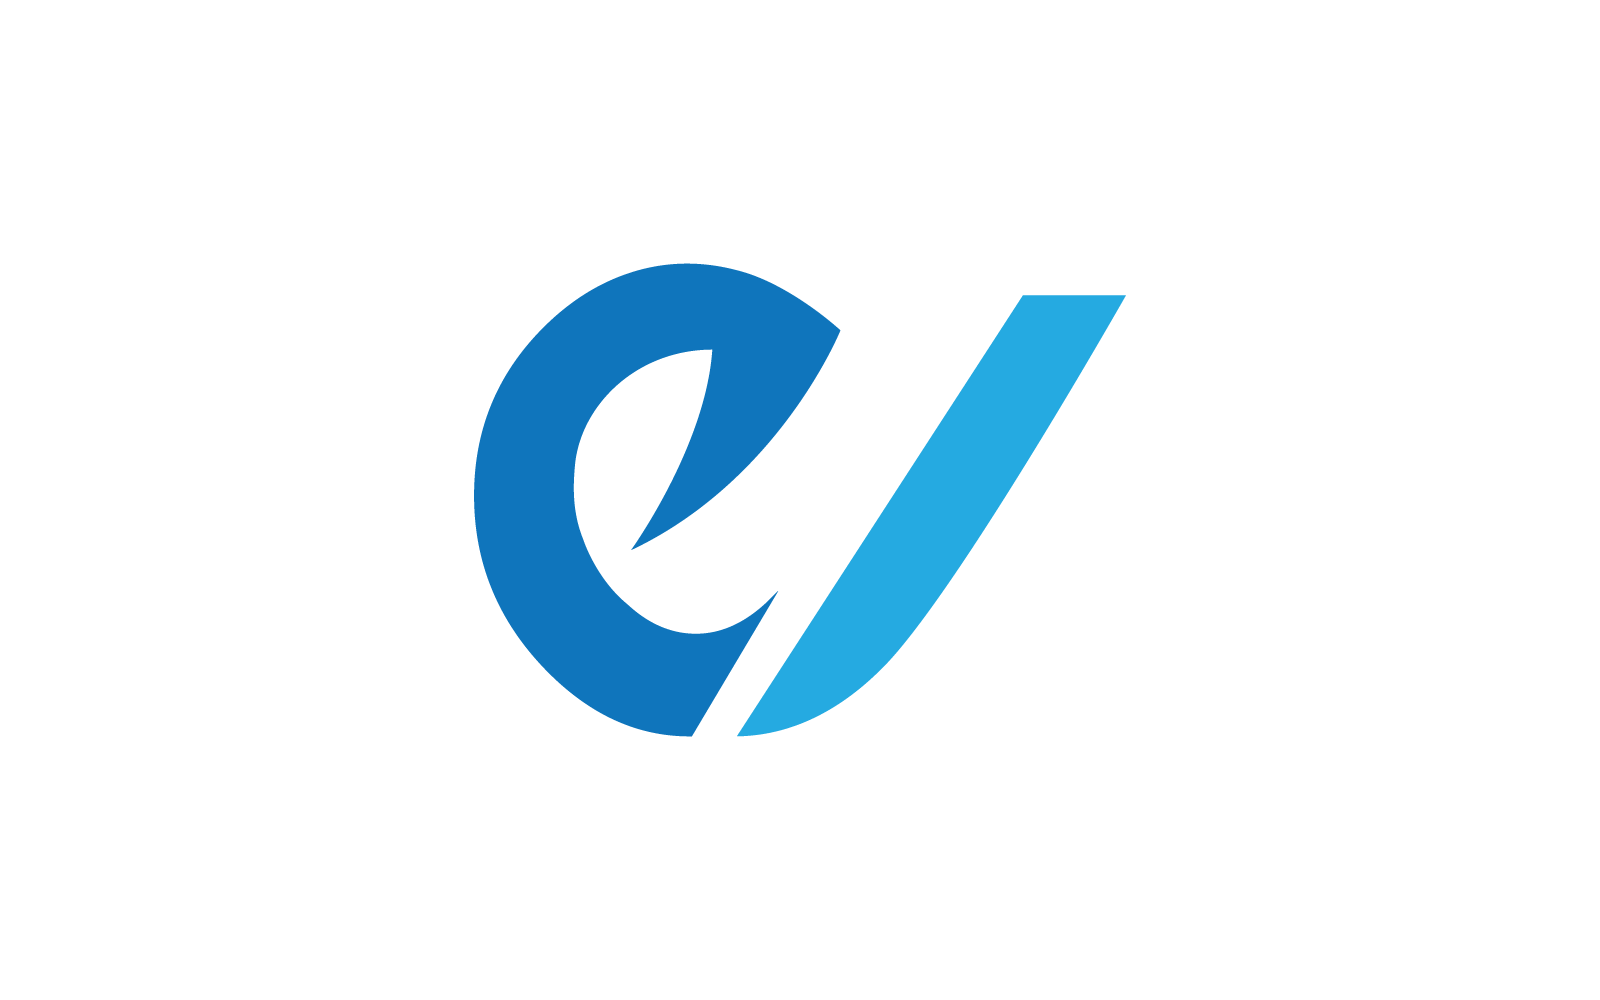 Modern E Initial, letter, alphabet font logo vector design